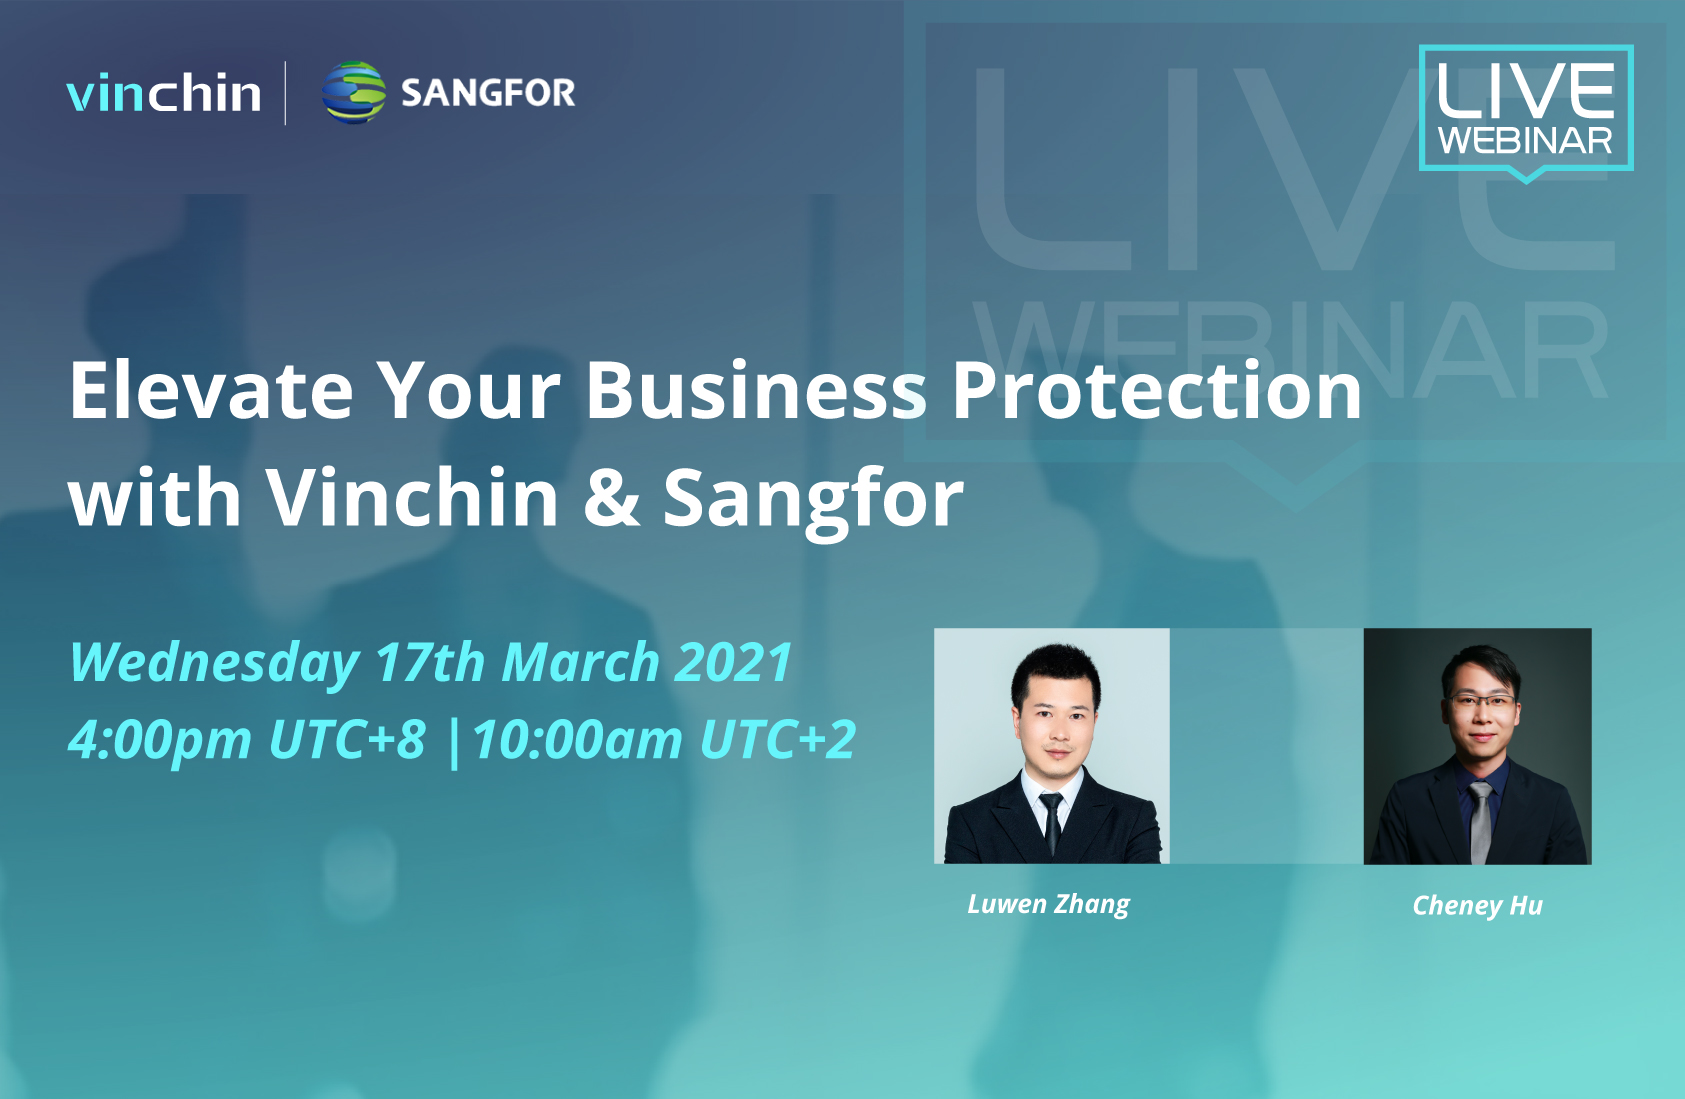 Vinchin × Sangfor | Podnieś ochronę swojego biznesu z Vinchin i Sangfor